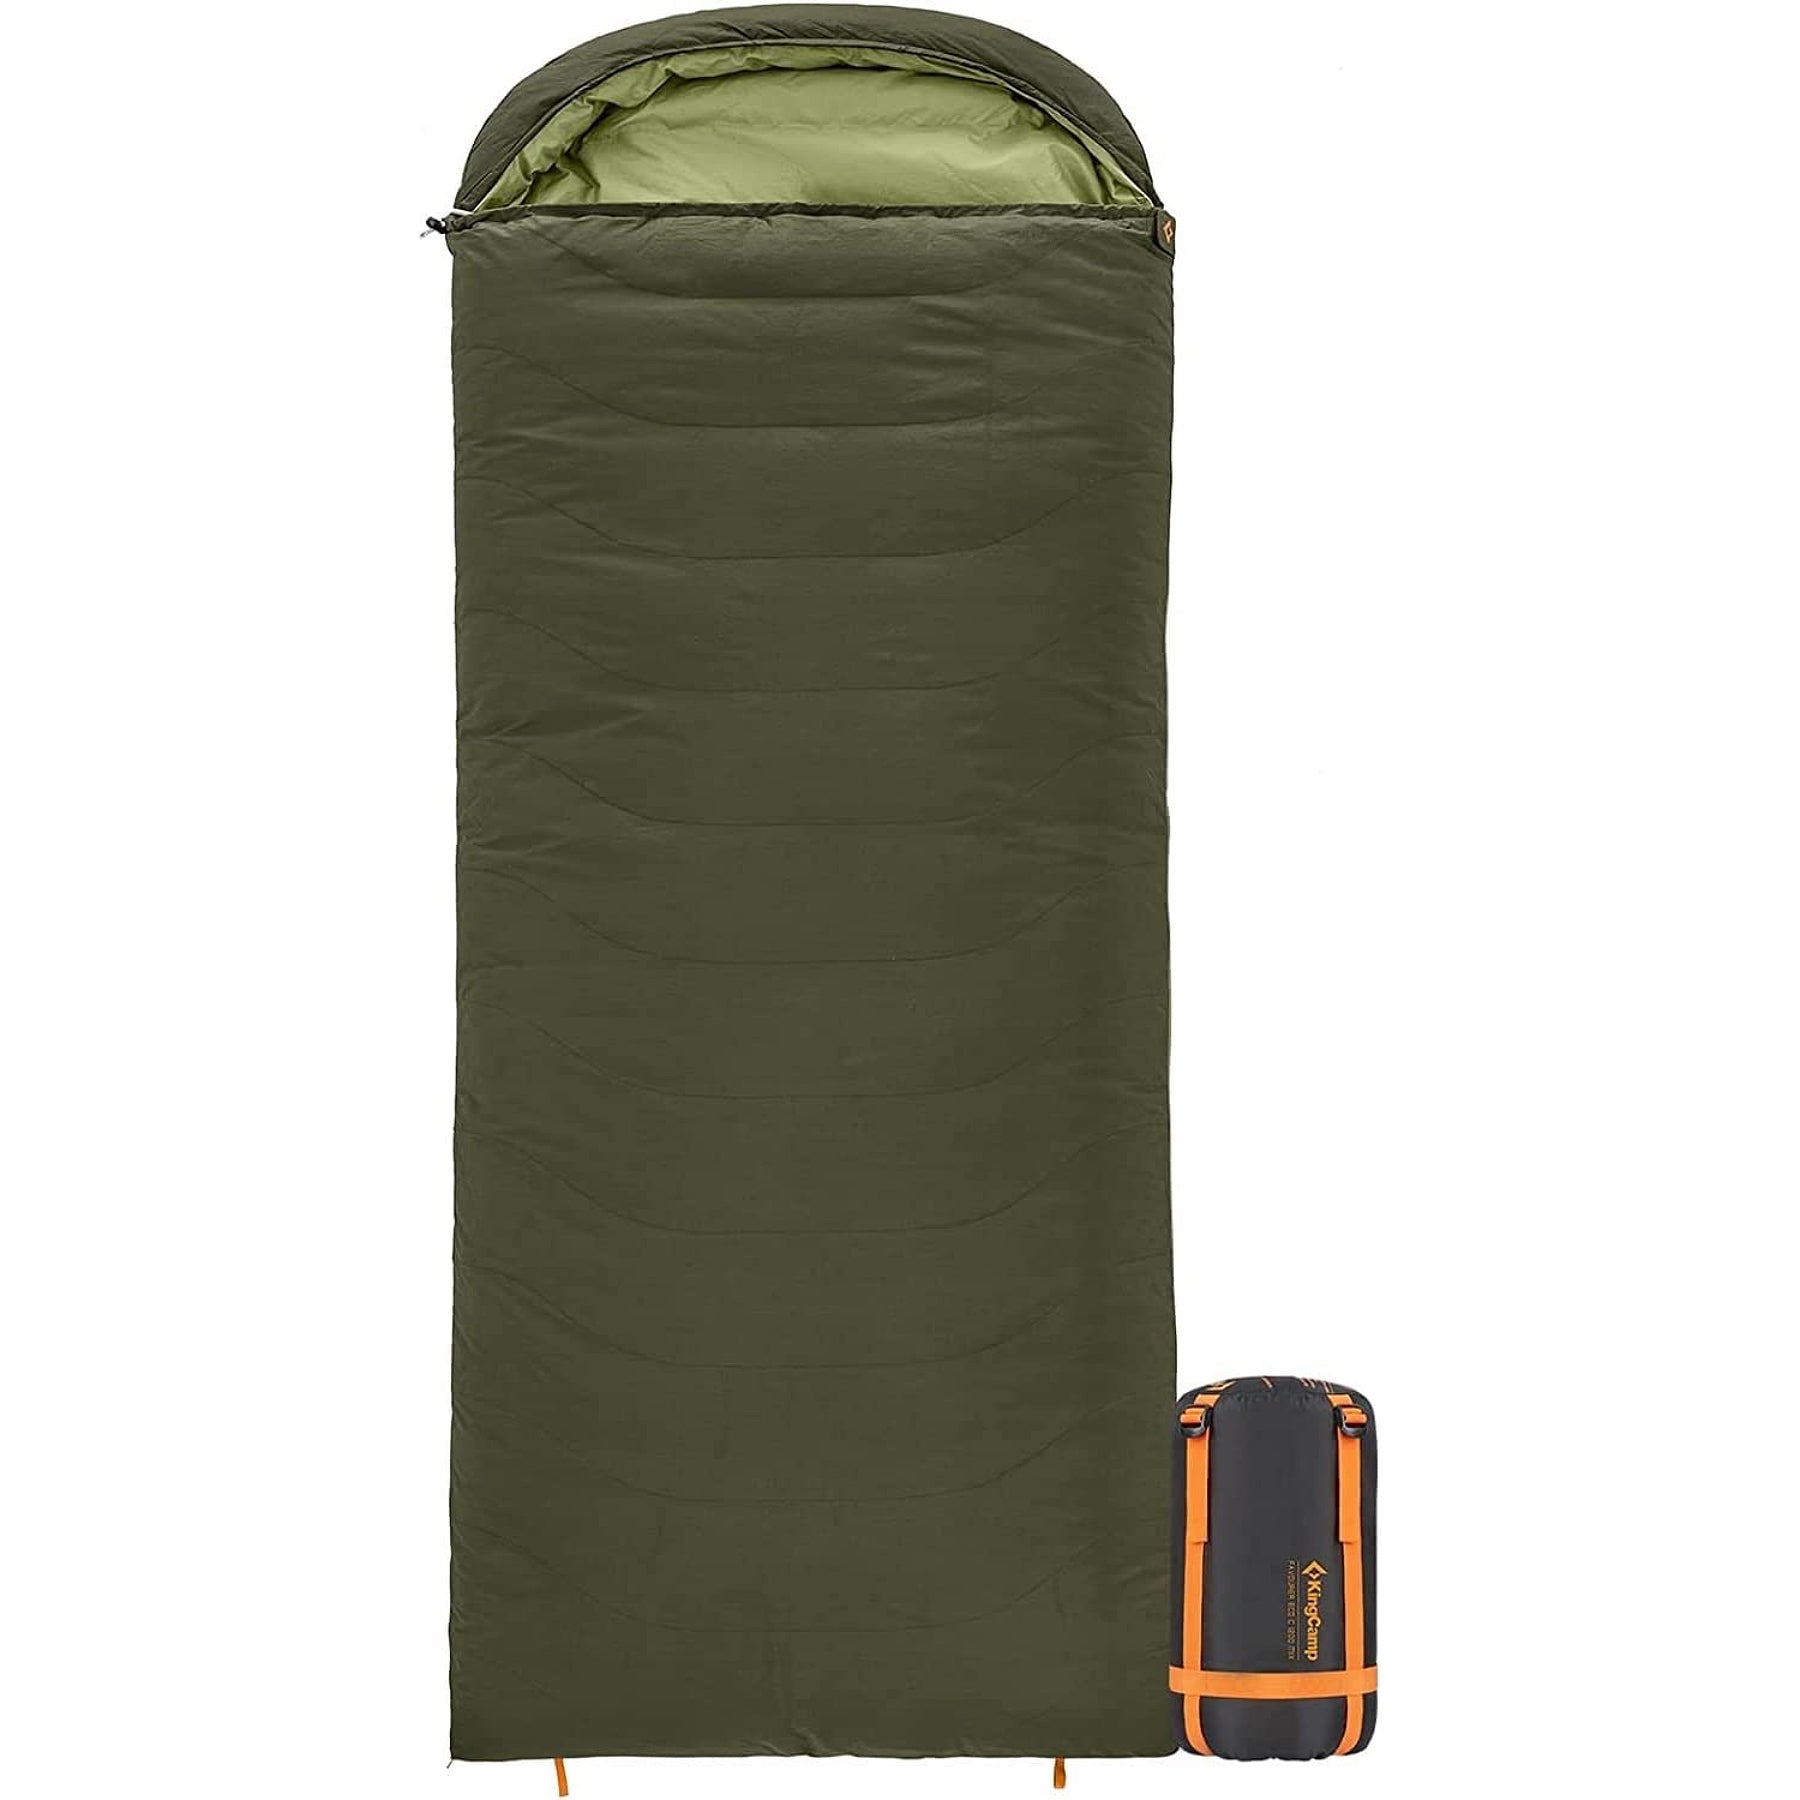 収納袋付き 寝袋 シュラフ 防水 1.8KG 封筒型 軽量 コンパクト 車中泊 ついに再販開始 - アウトドア寝具